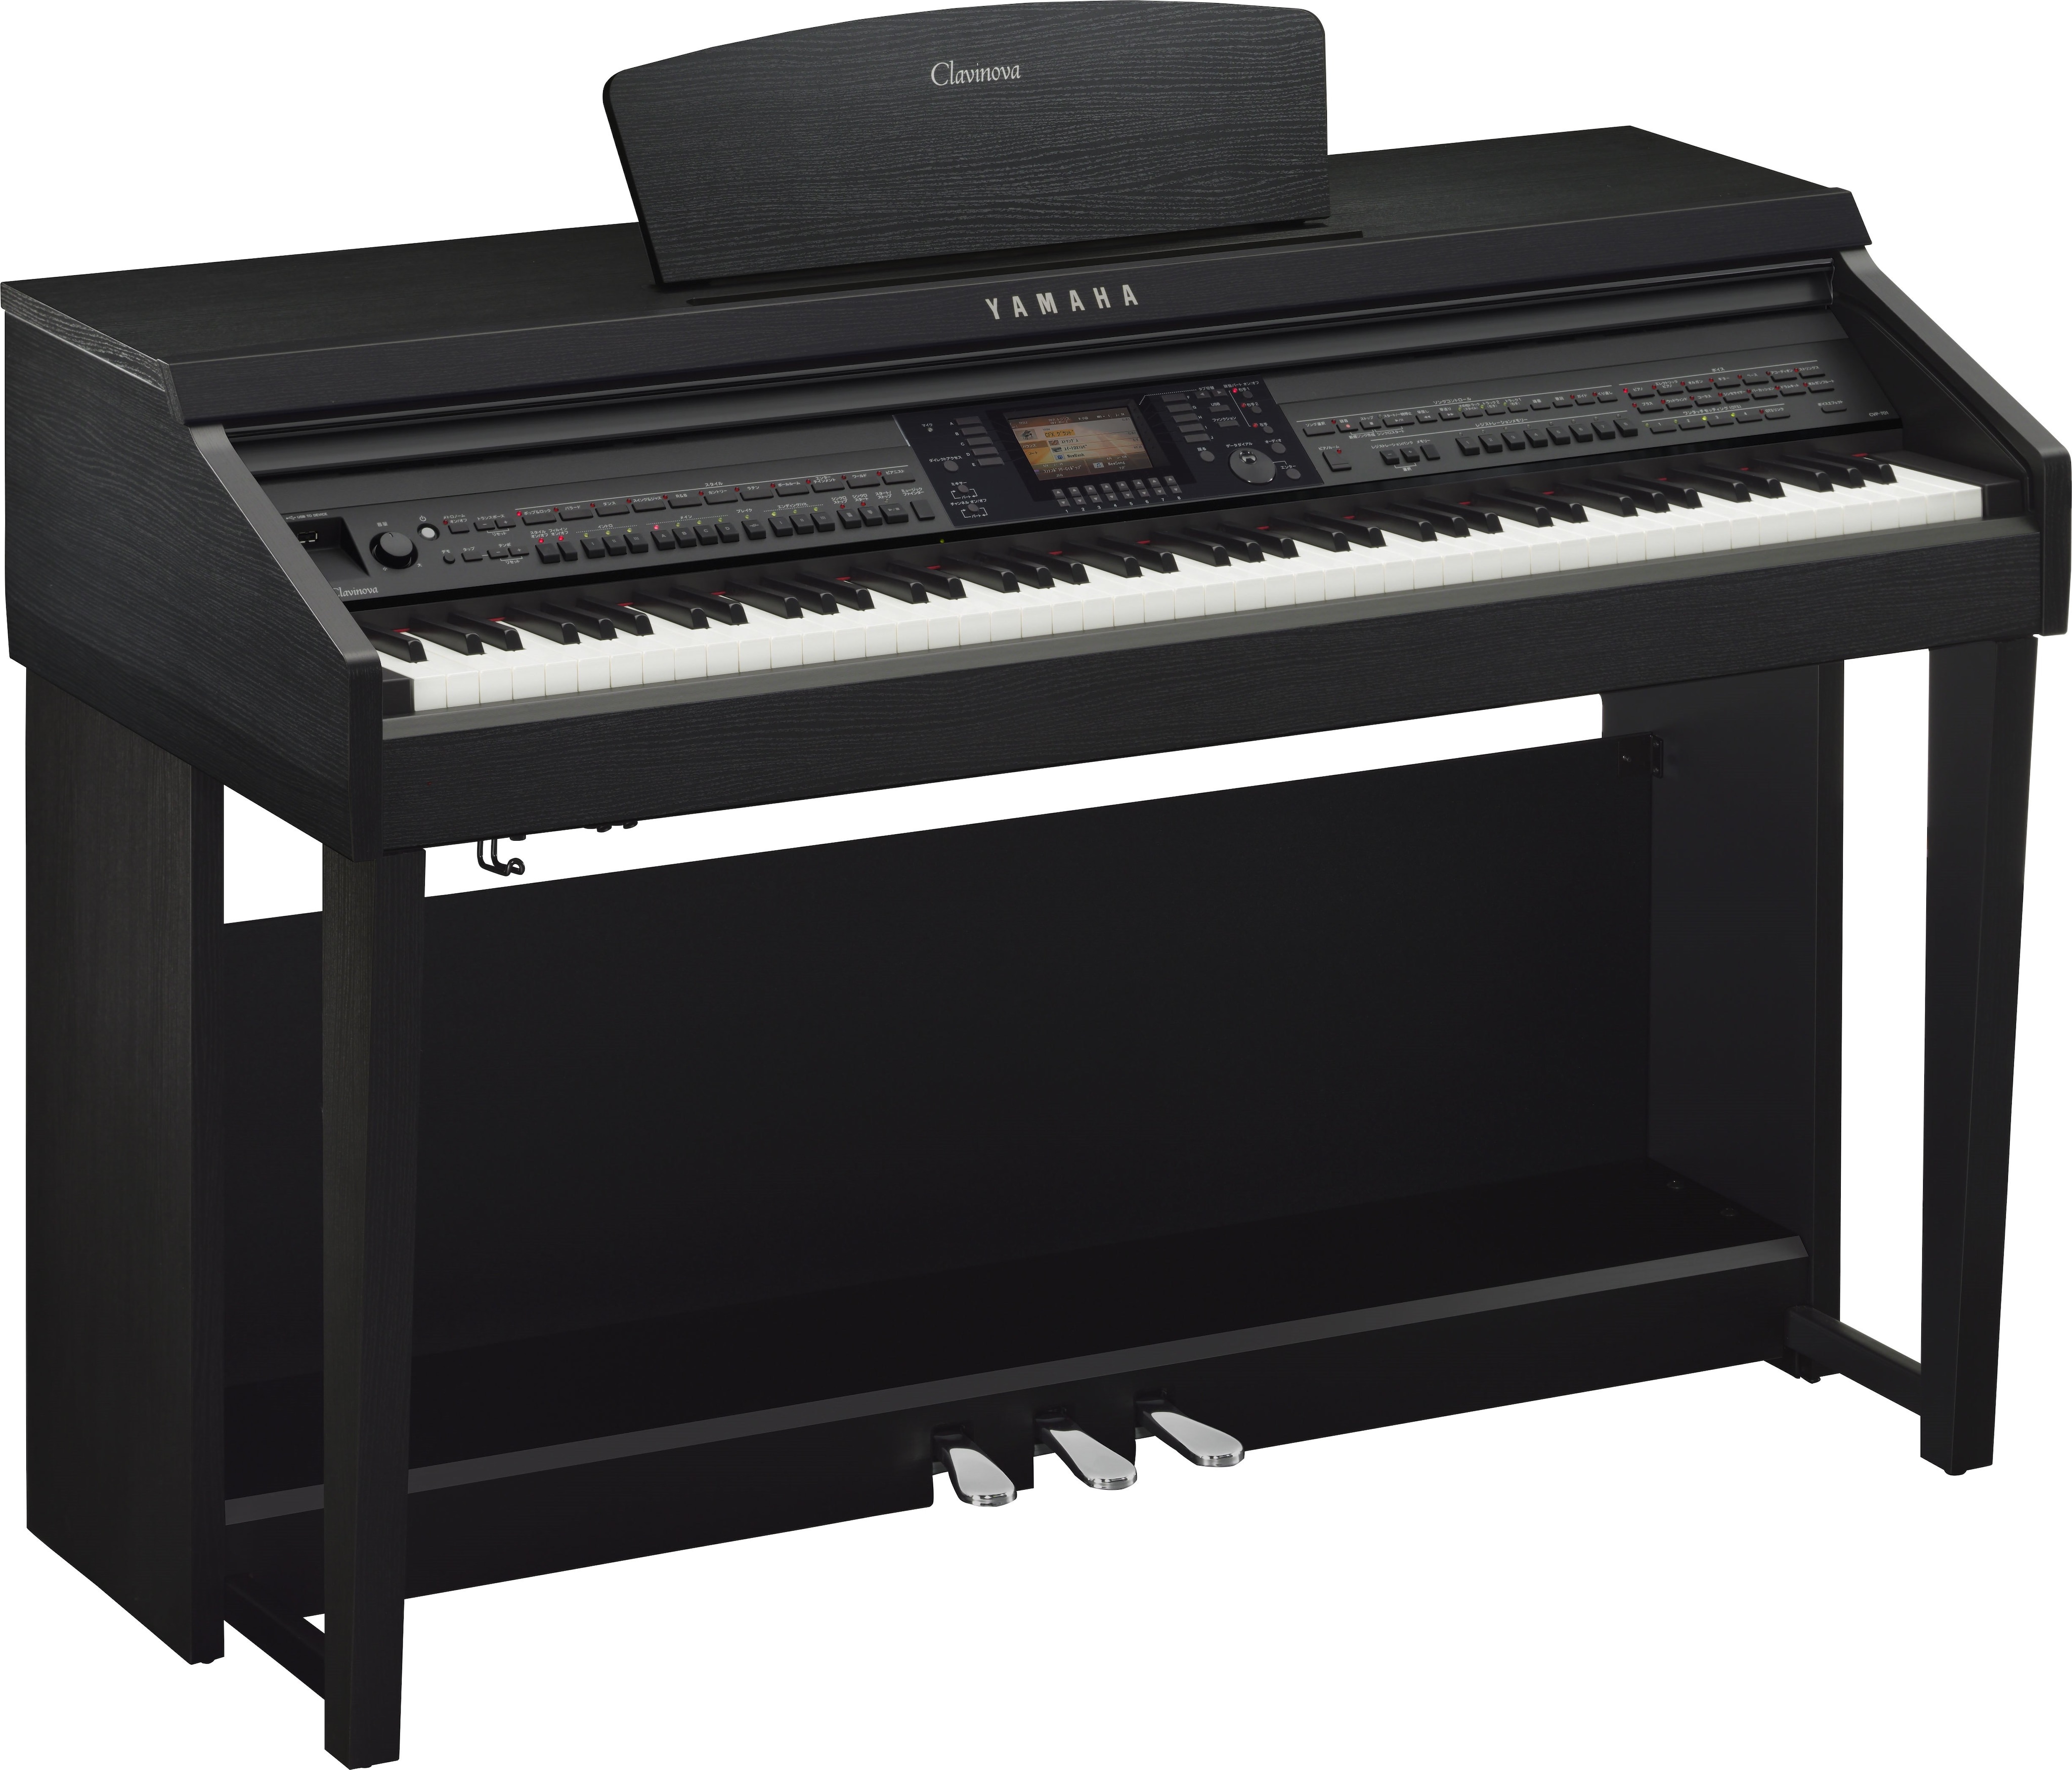 売り本物YAMAHA ヤマハ クラビノーバ CVP-701B 17年製ヤマハ電子ピアノ 電子ピアノ ヤマハ